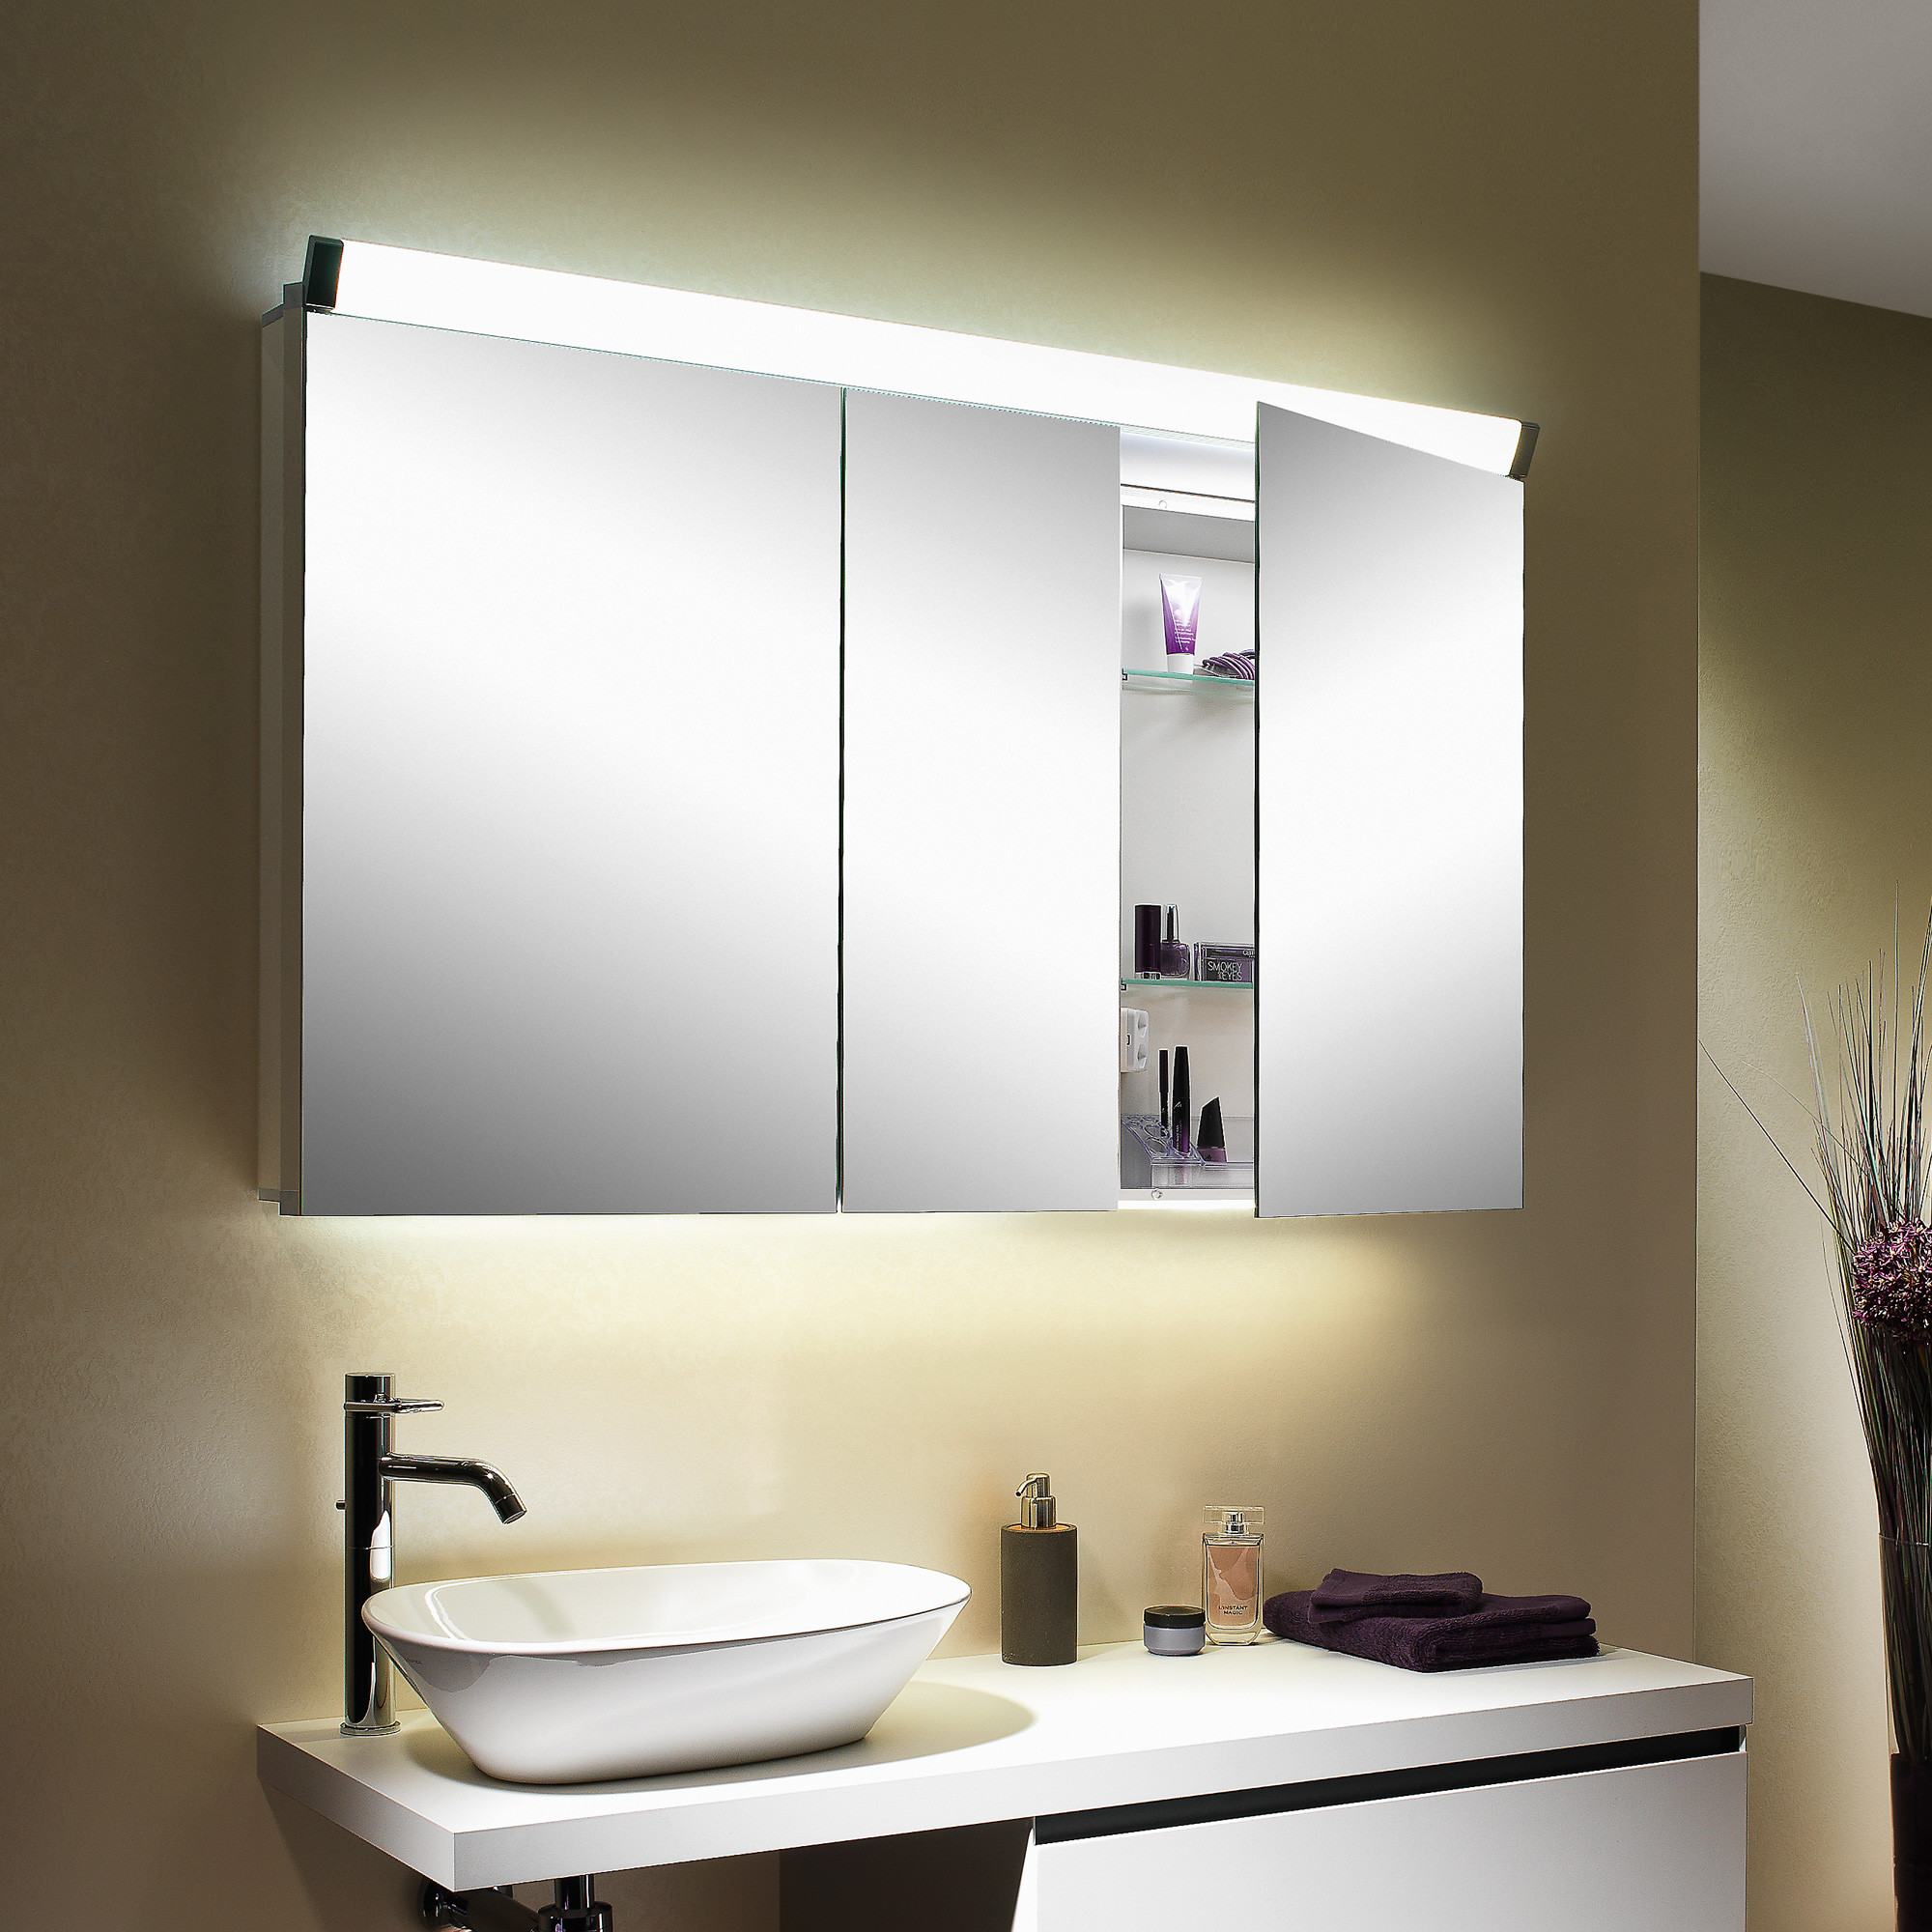 Spiegelschrank Mit Beleuchtung
 Schneider PALILINE Spiegelschrank mit 3 Türen mit